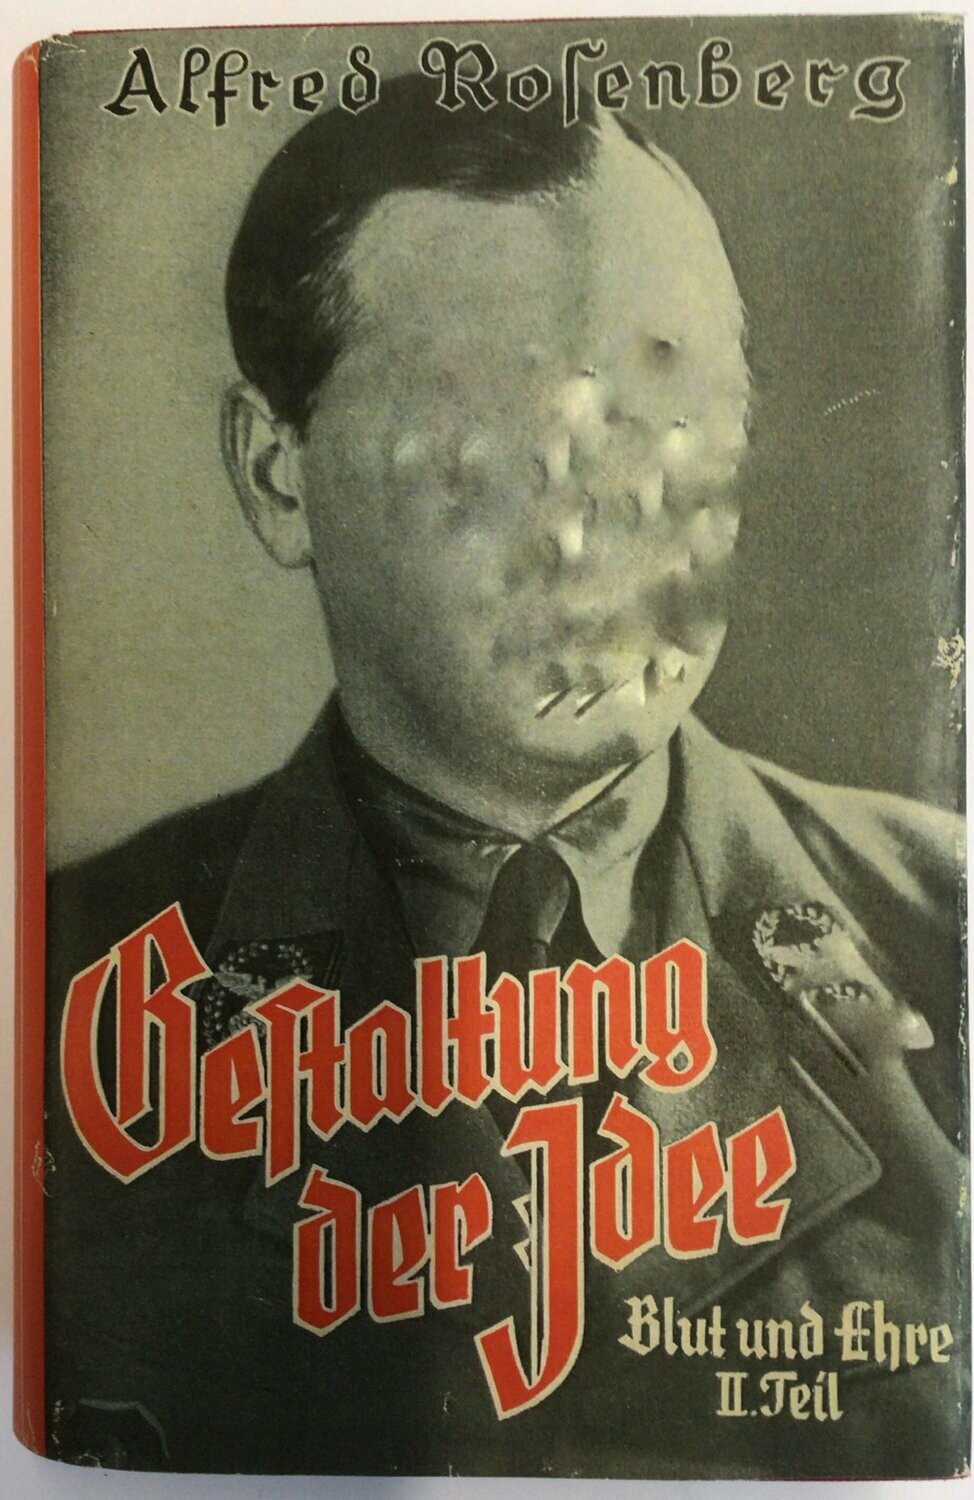 Gestaltung der Idee - Blut und Ehre Band 2 - Späte Halbleinenausgabe aus dem Jahr 1943 (15. Auflage) mit Schutzumschlag (Kopie)